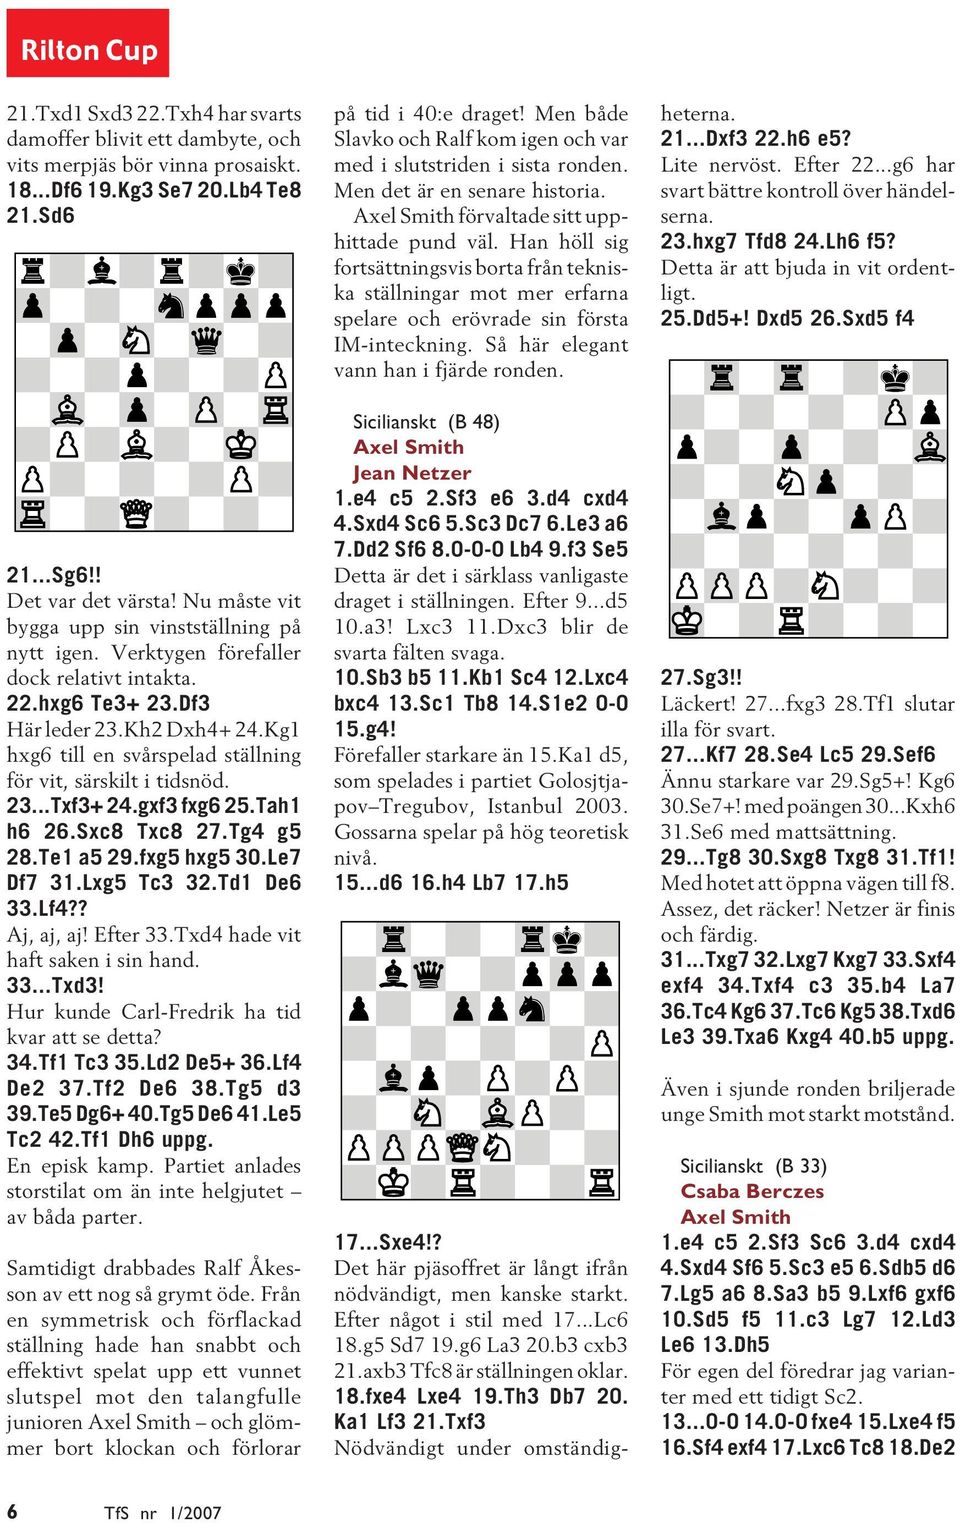 Kg1 hxg6 till en svårspelad ställning för vit, särskilt i tidsnöd. 23...Txf3+ 24.gxf3 fxg6 25.Tah1 h6 26.Sxc8 Txc8 27.Tg4 g5 28.Te1 a5 29.fxg5 hxg5 30.Le7 Df7 31.Lxg5 Tc3 32.Td1 De6 33.Lf4?